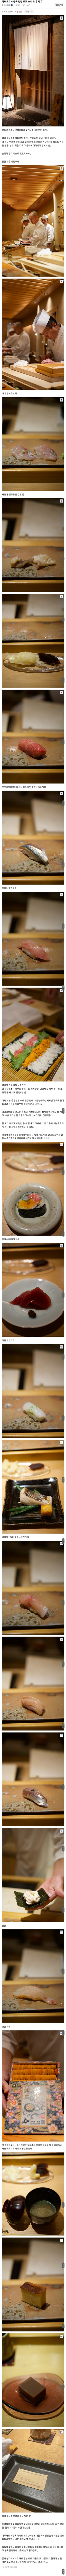 도쿄에서 오마카세 먹고 식중독 걸린 디시인.jpg